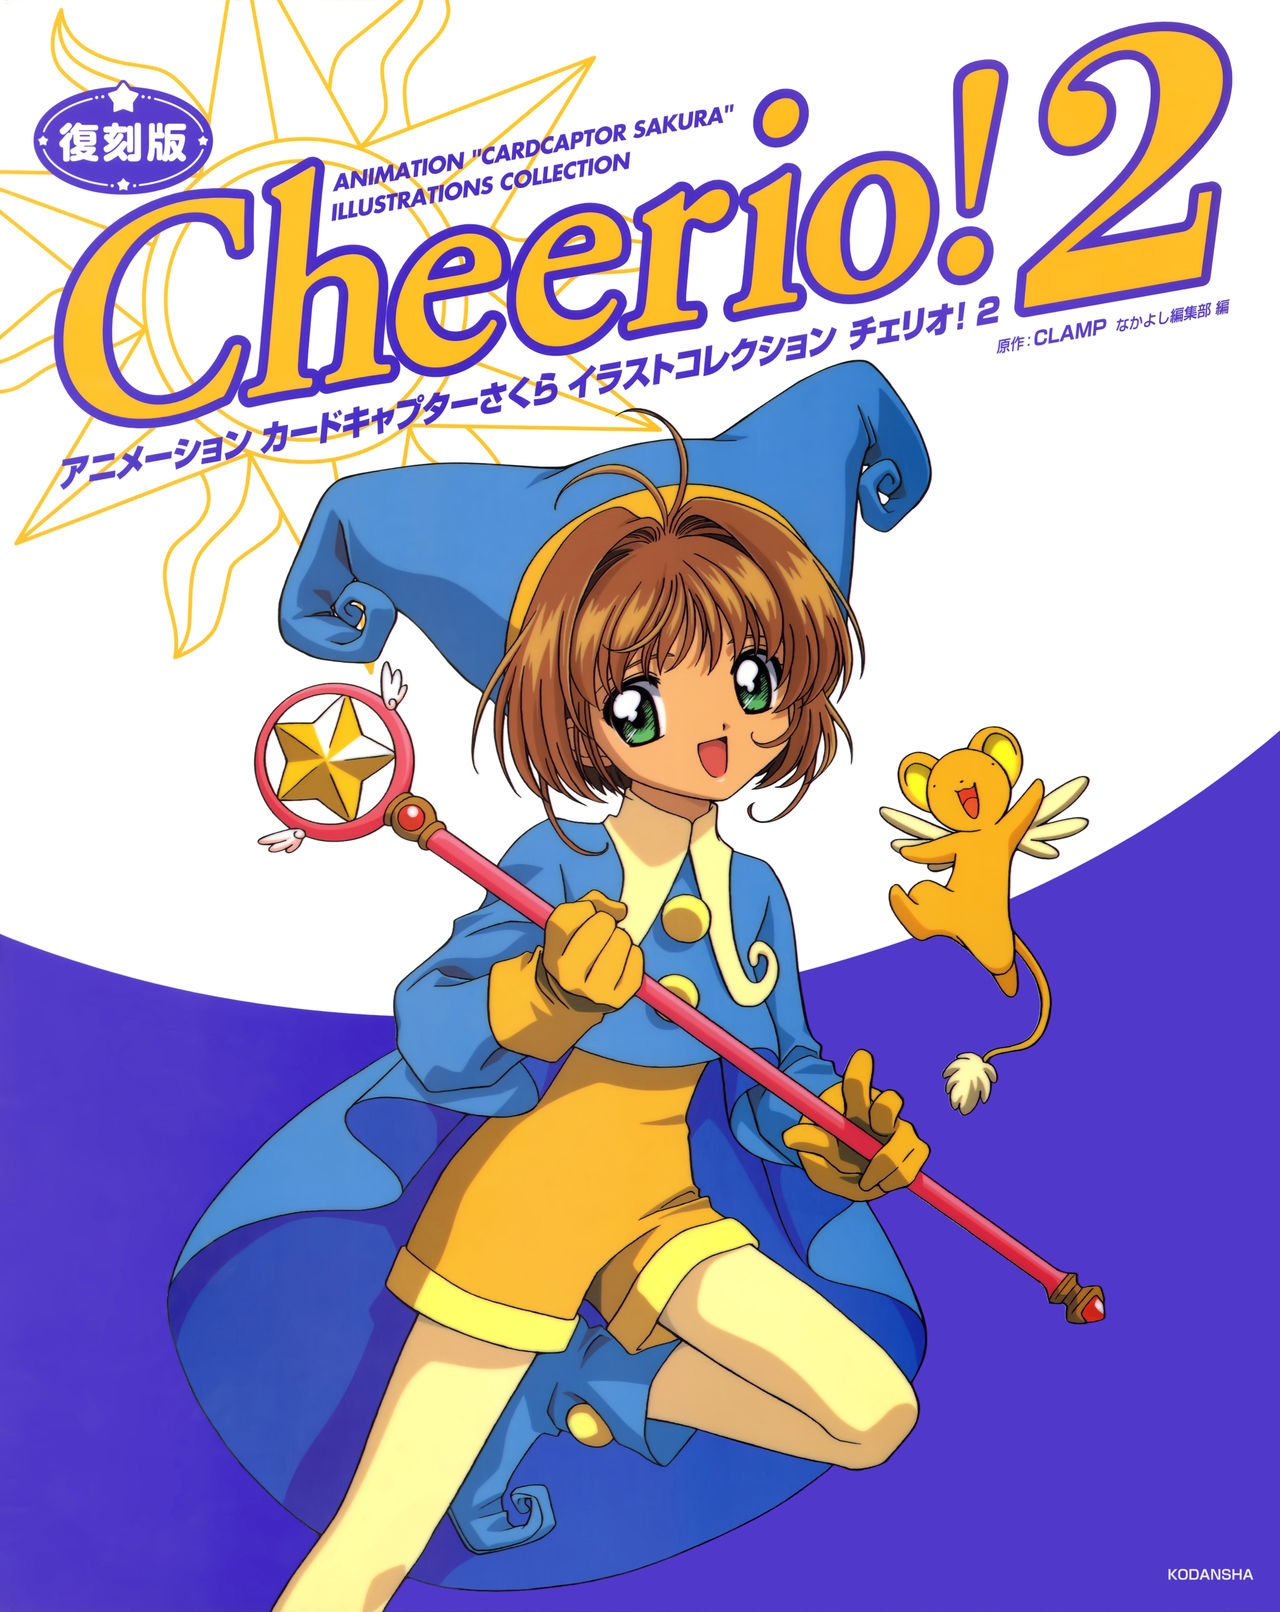 Cheerio! 2 - TV Animation Cardcaptor Sakura Illust Collection 0